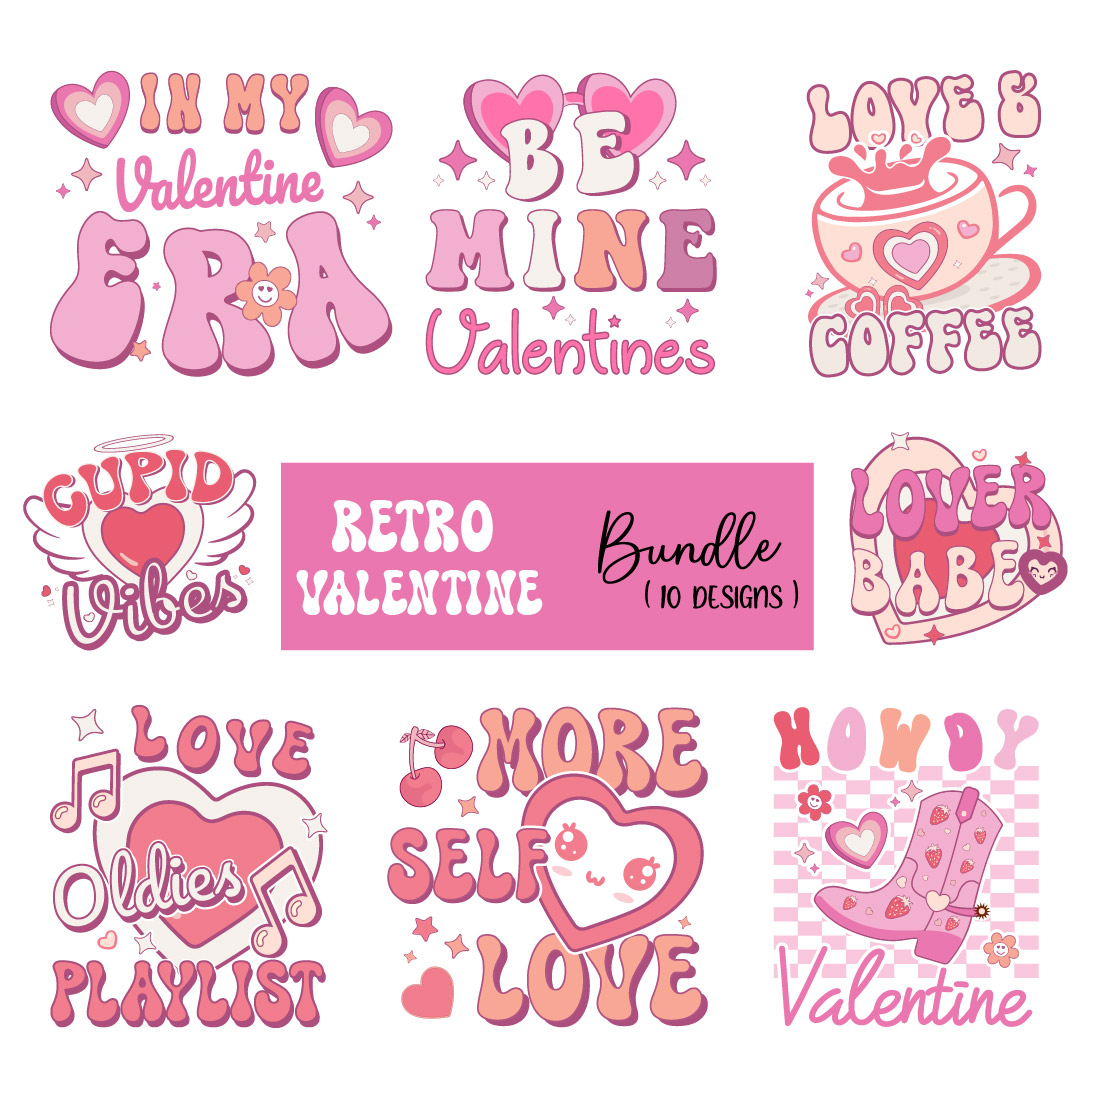 Retro Valentines PNG Sublimation Bundle cover image.